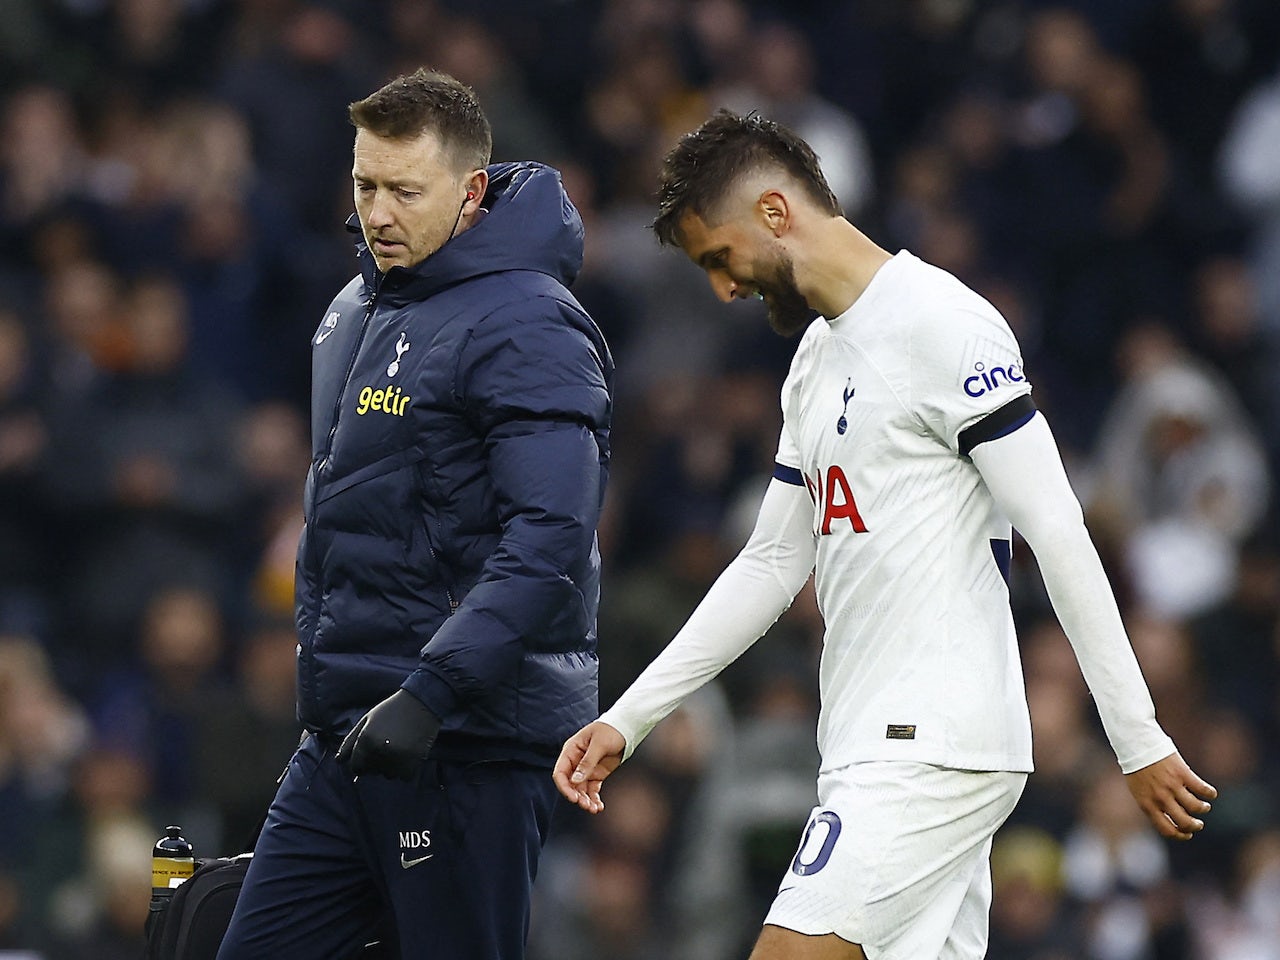 Tottenham Hotspur midfielder reveals he has been playing through broken bone